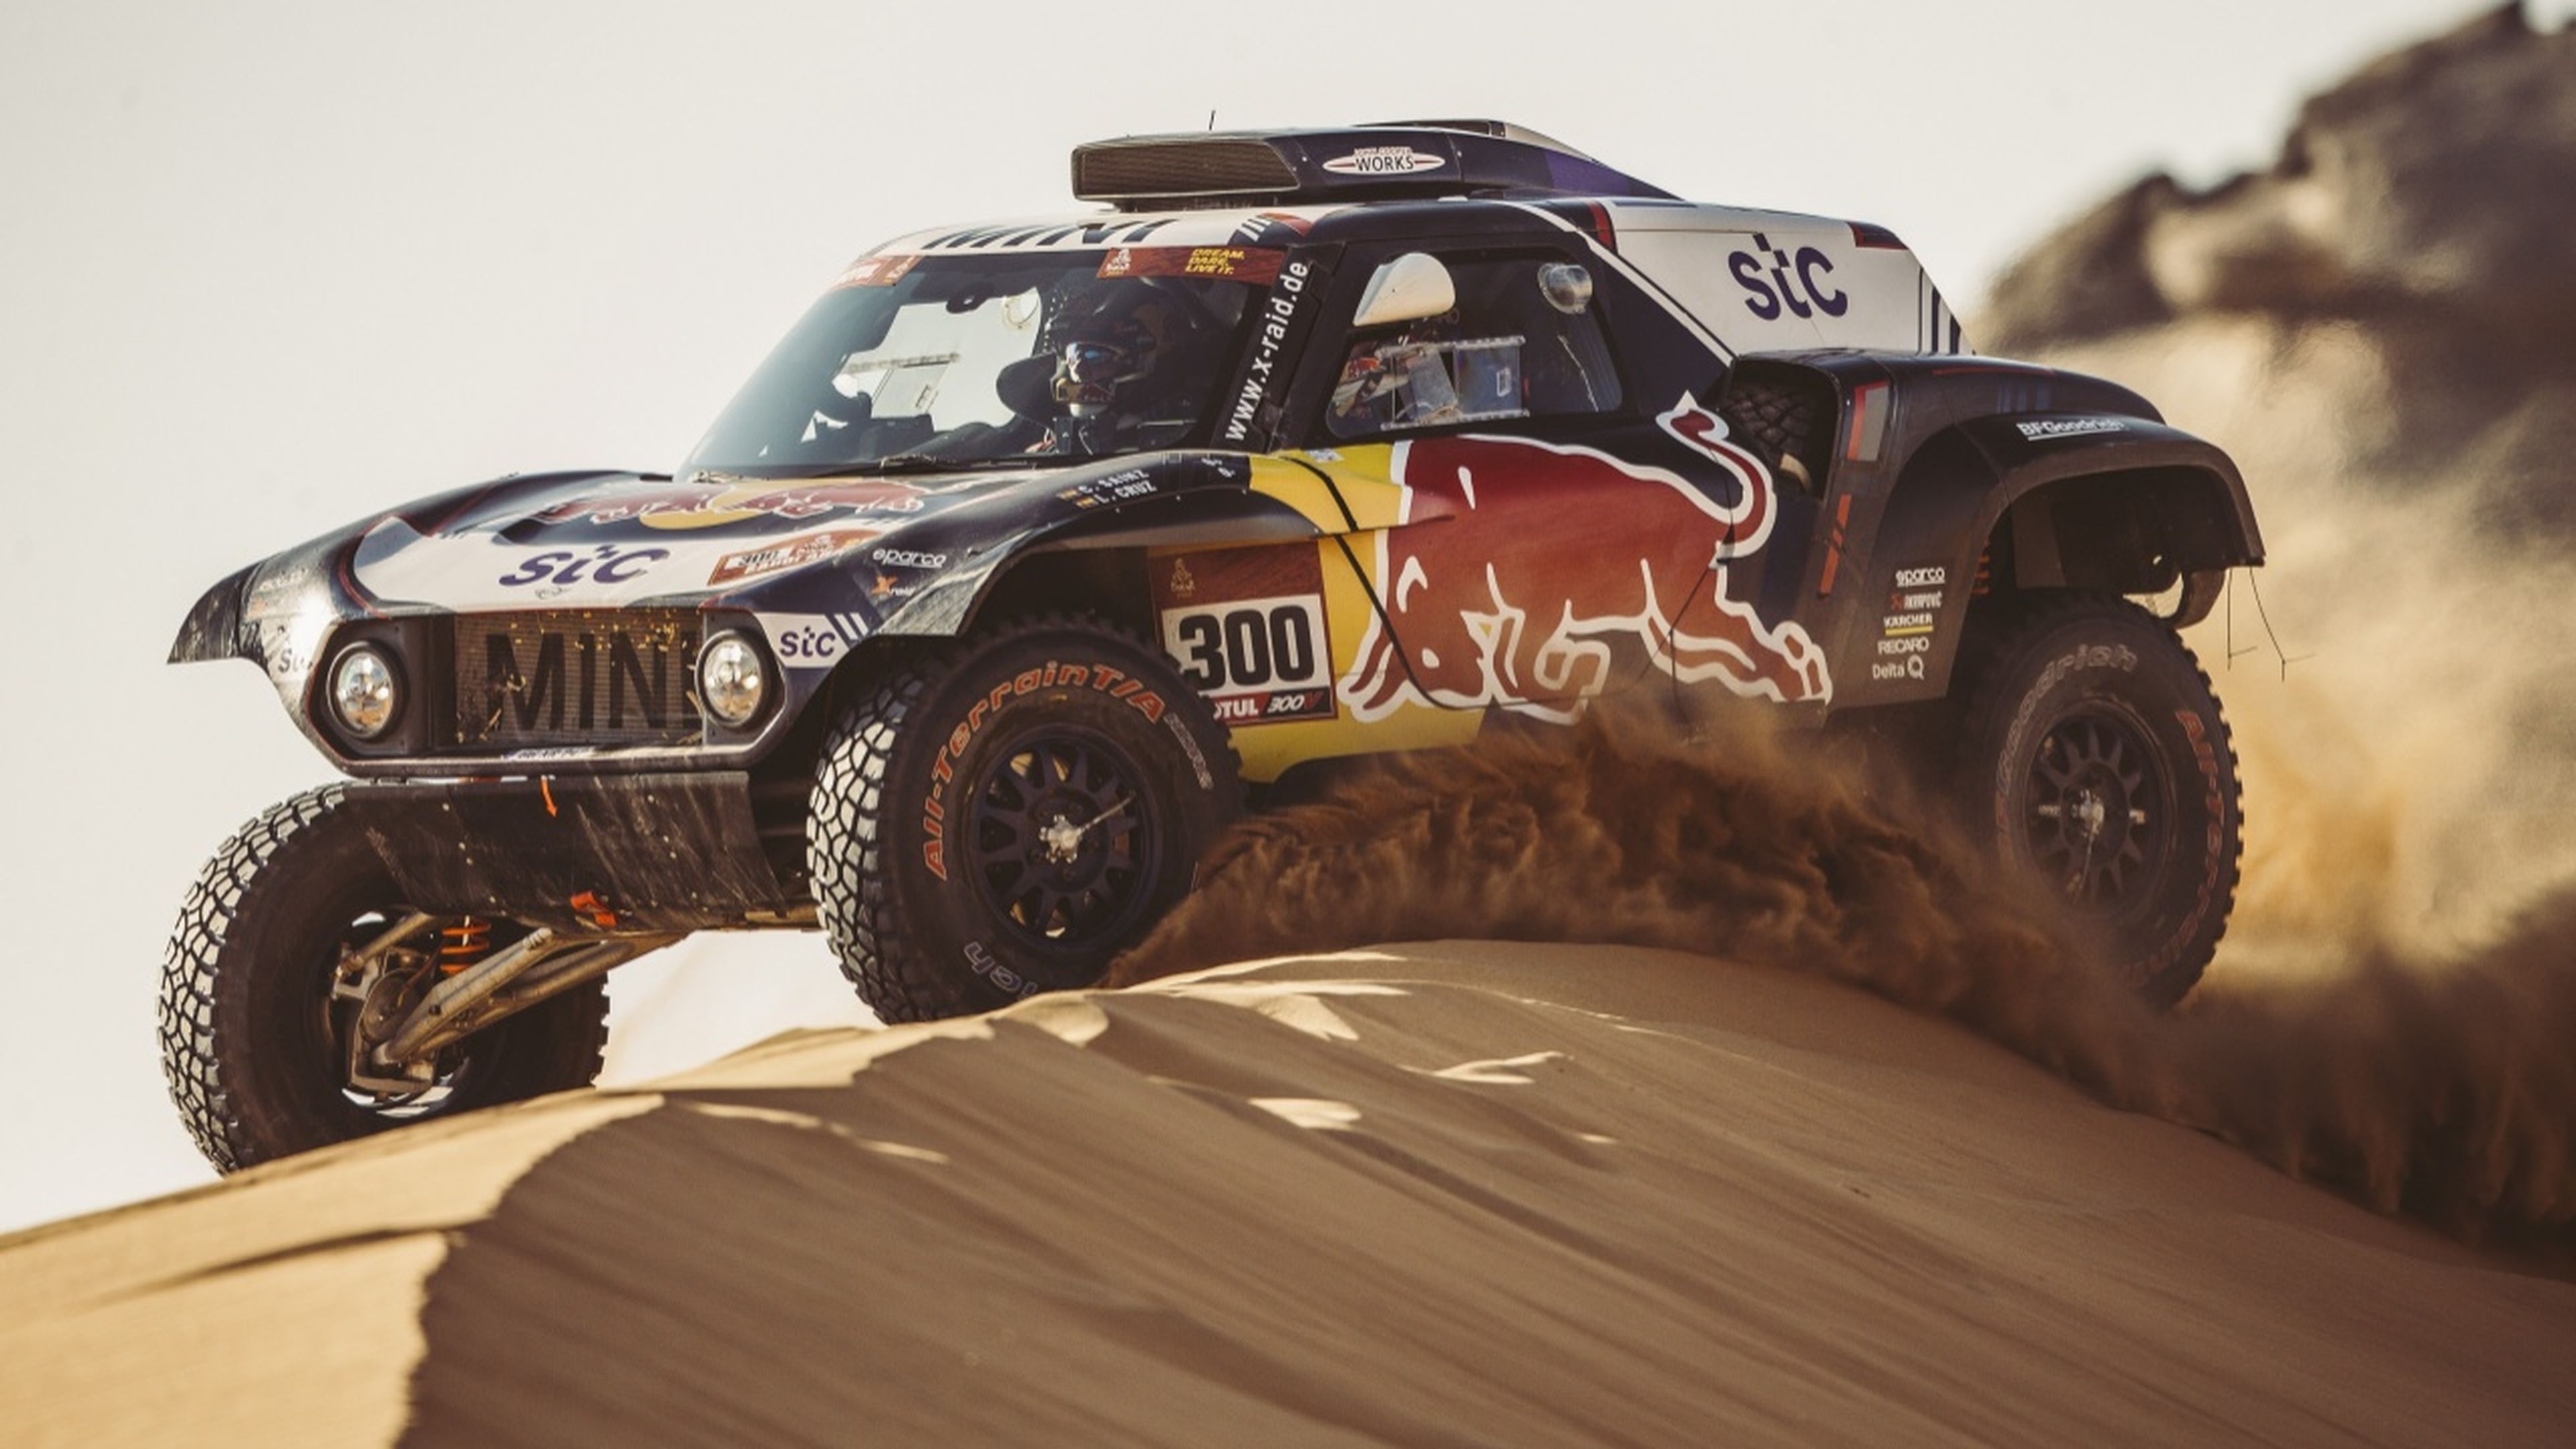 Carlos Sainz en el Dakar 2021